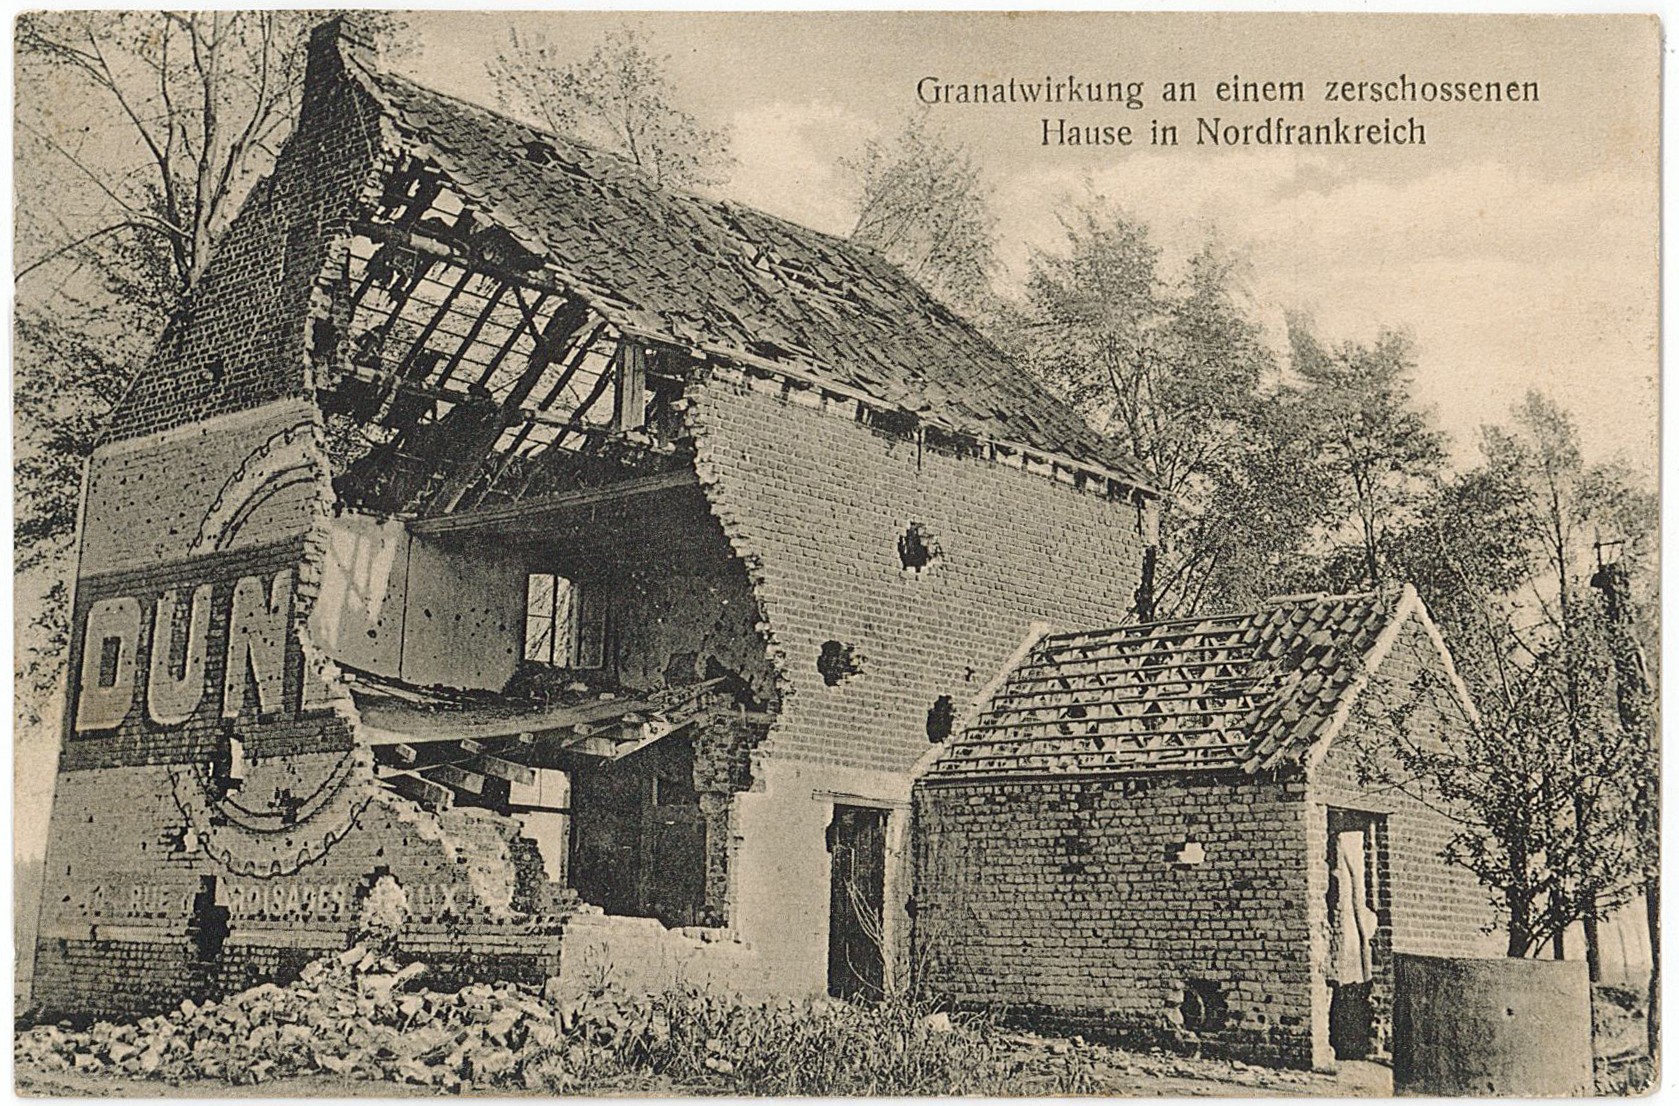 Postkarte von Erich Otto an seinen Vater Herrmann Otto, 09.03.1918 (Museum Wolmirstedt RR-F)